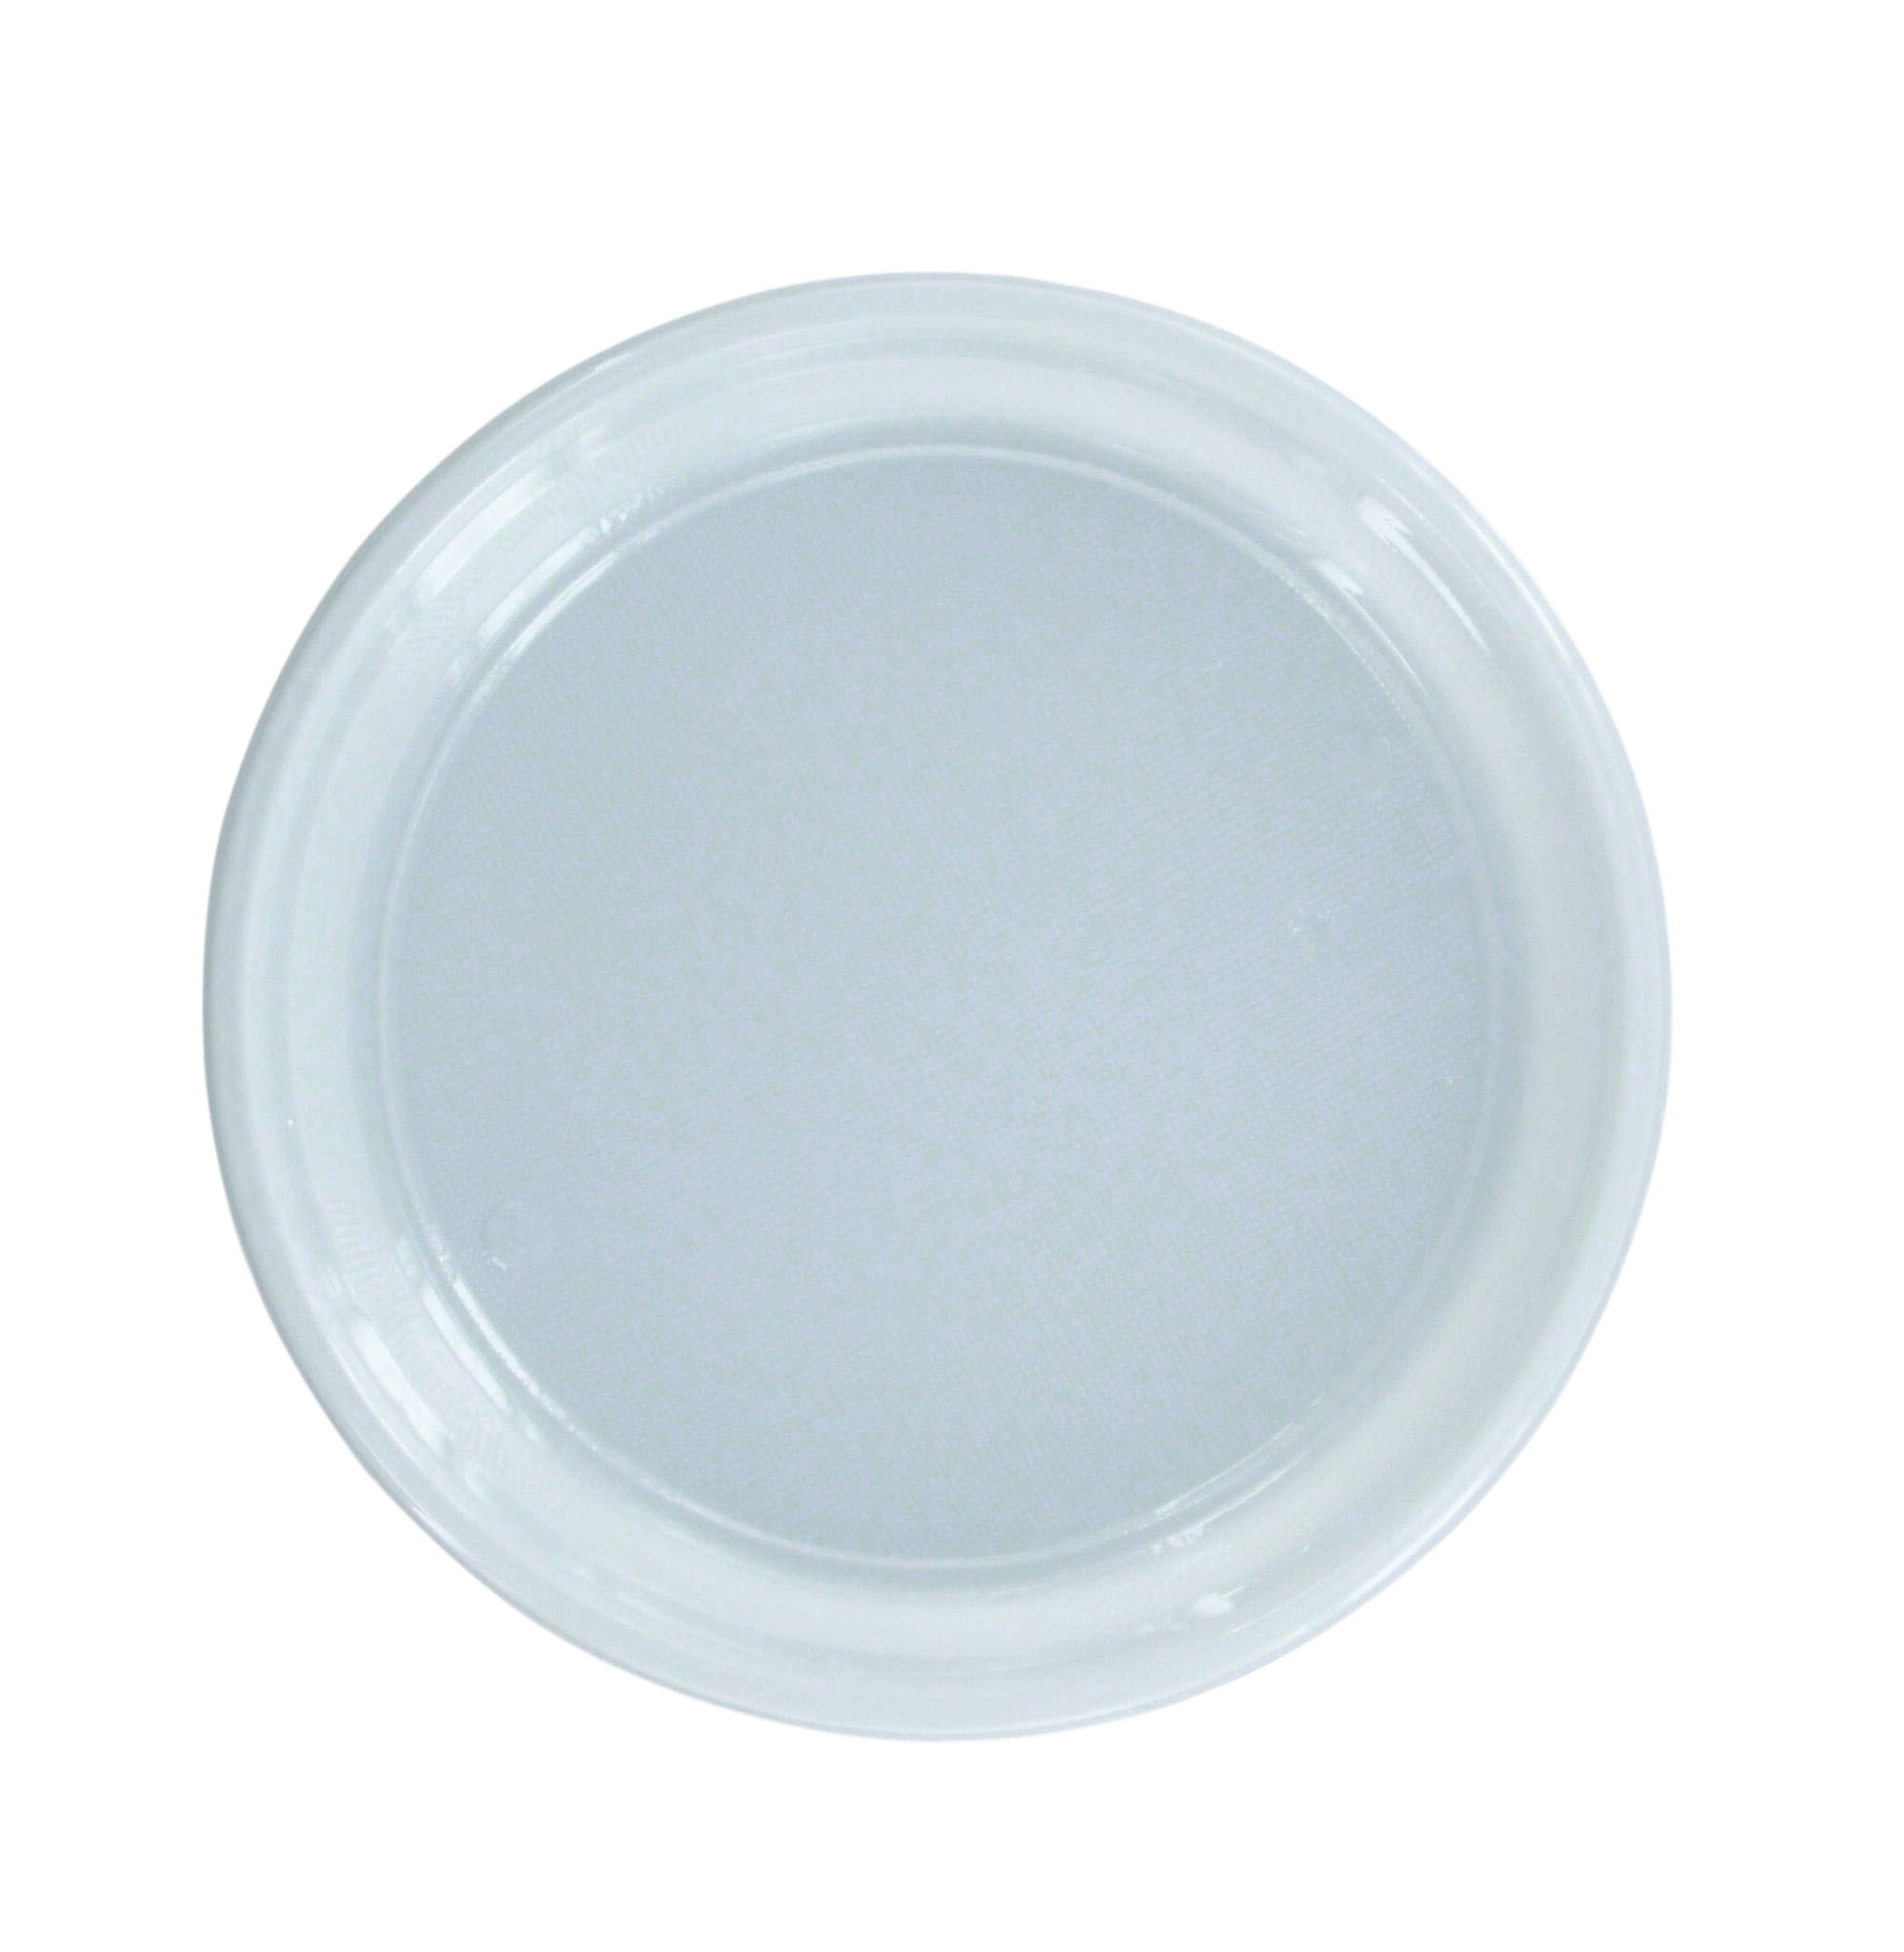 Plastic Dinner Plate white 22cm 8.8inch 100pcs